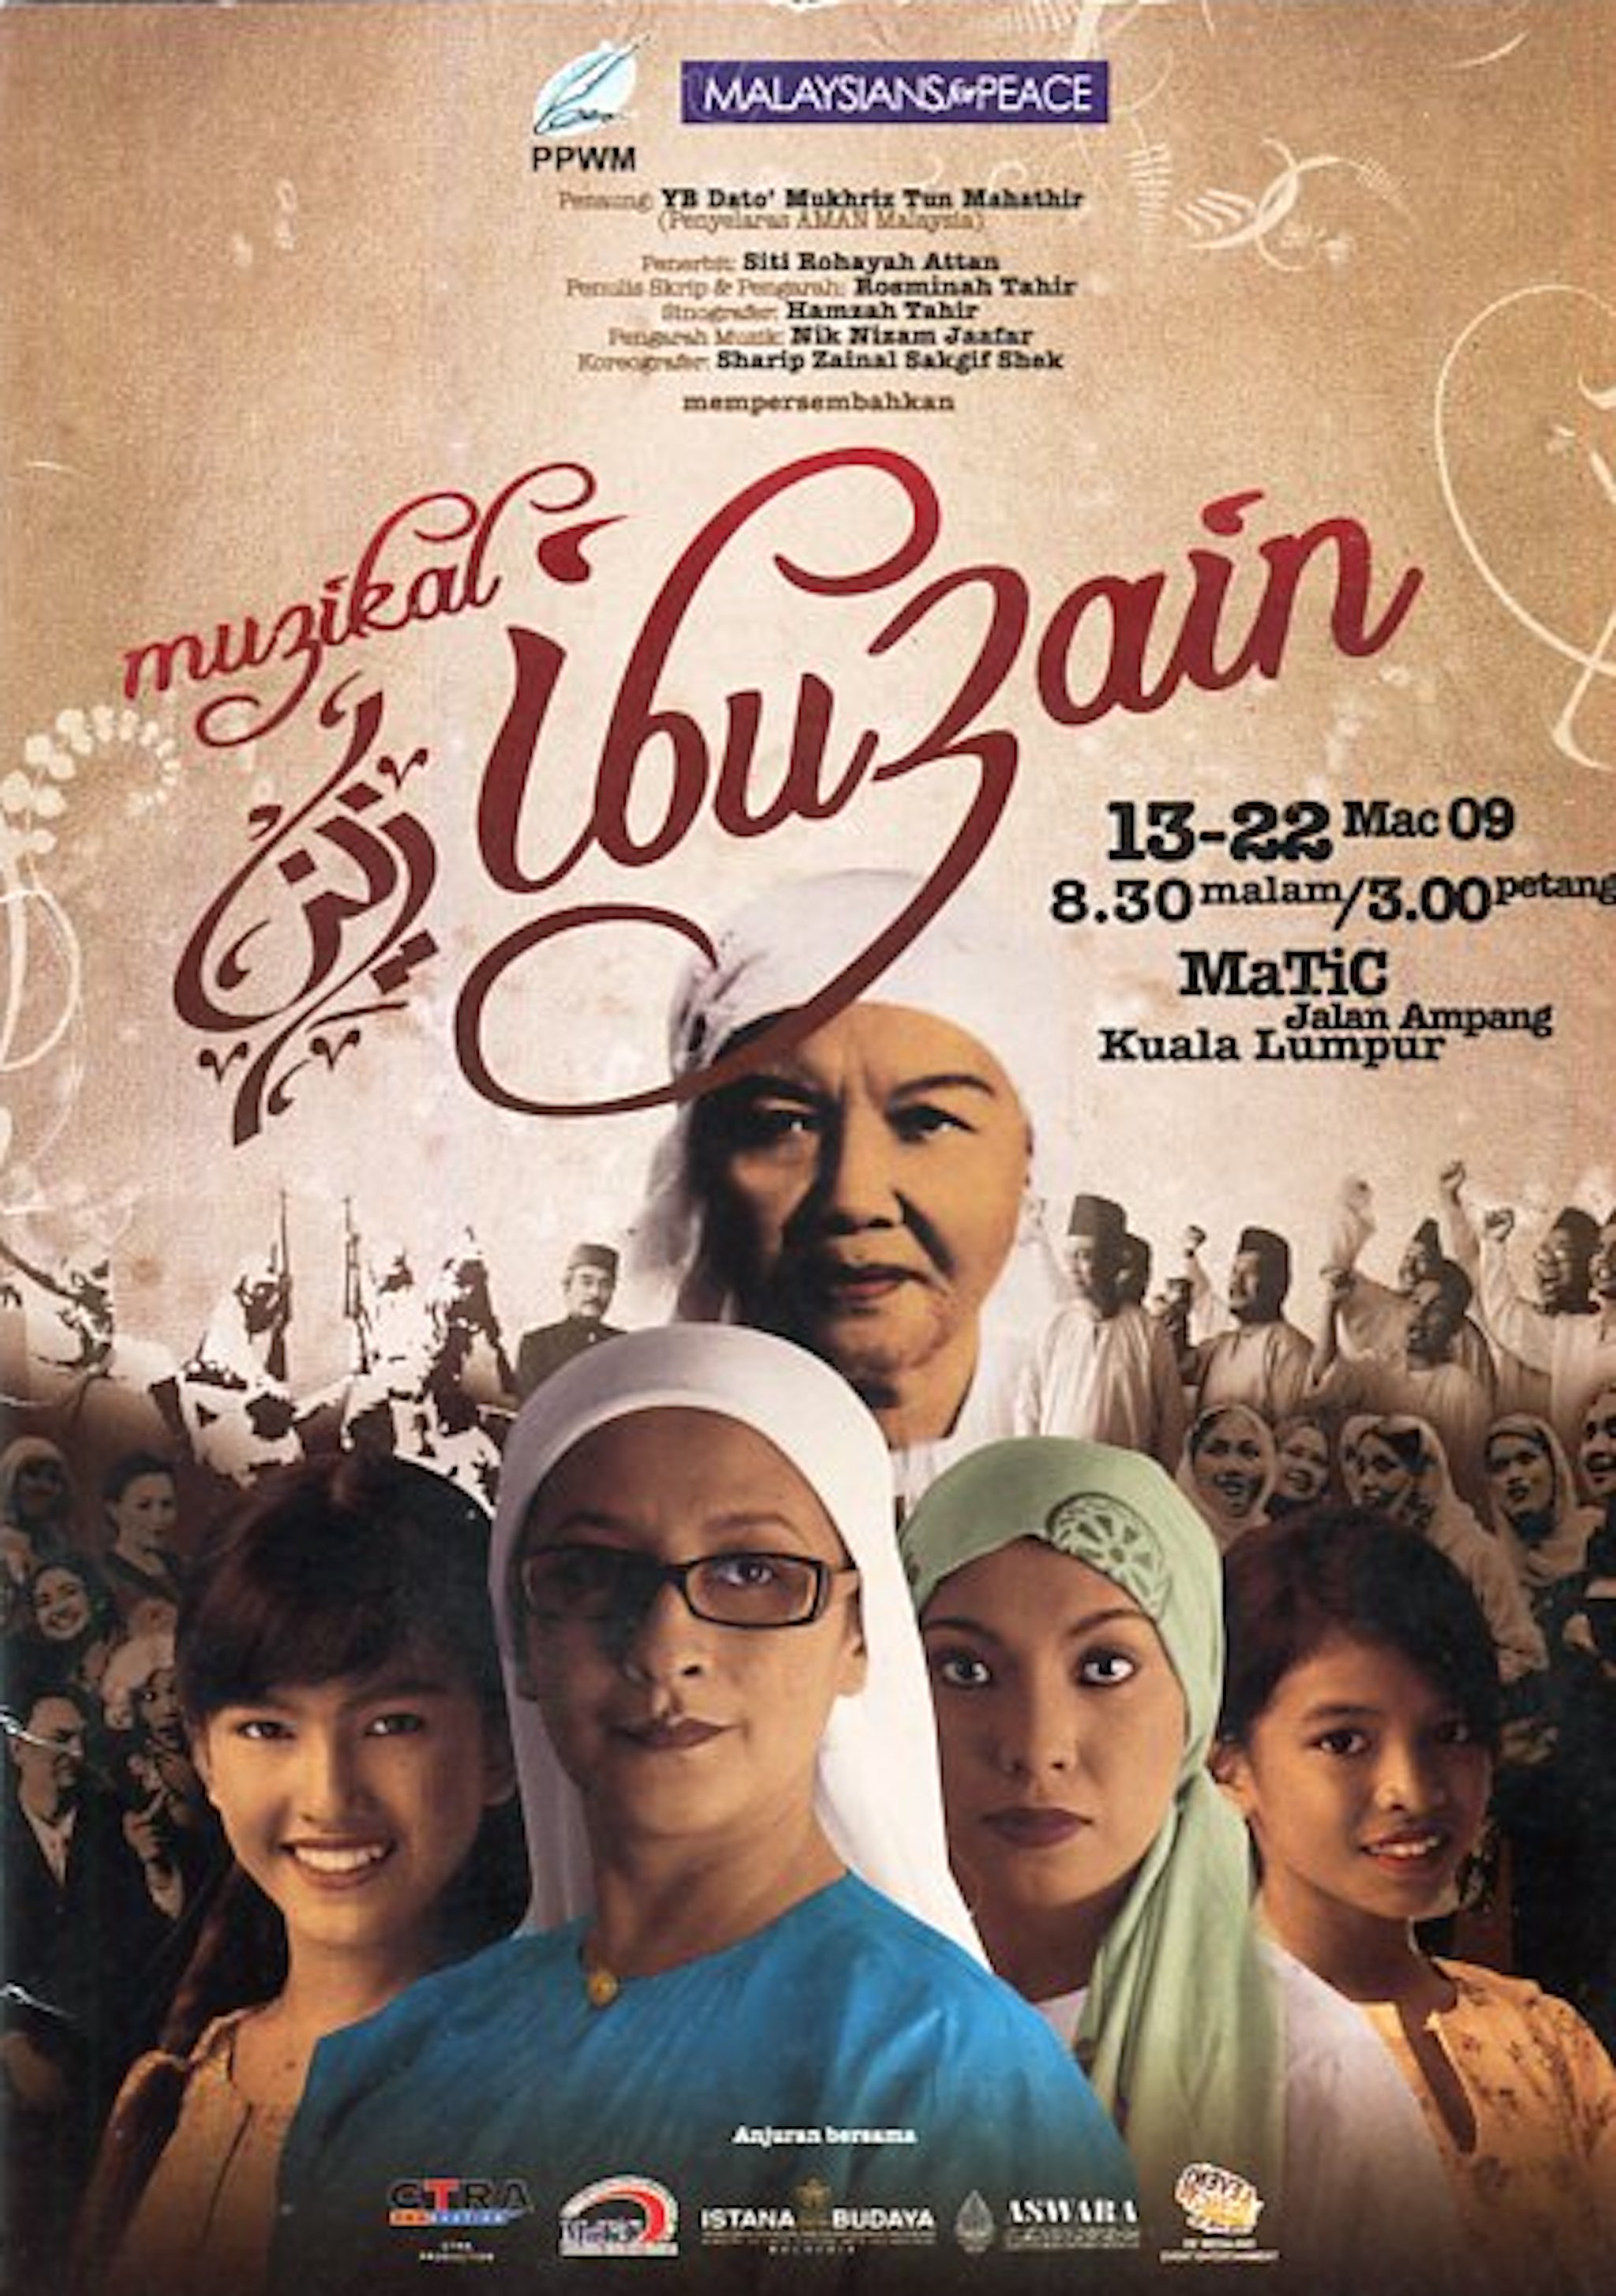 2009 Muzikal Ibu Zain cover